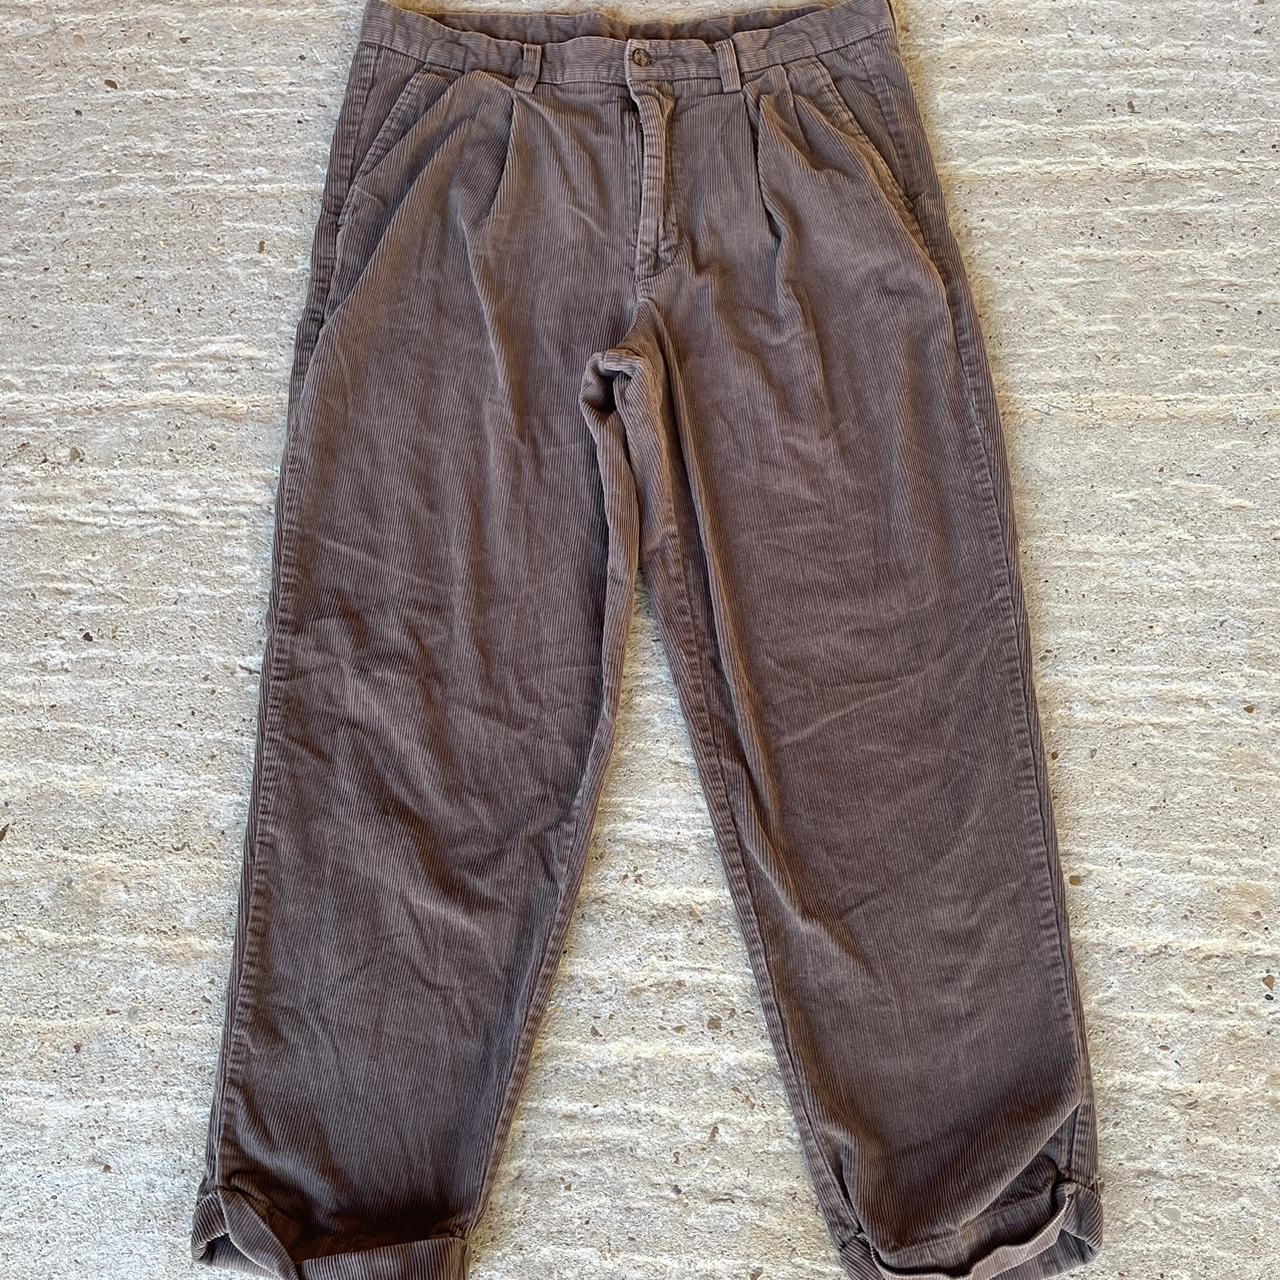 Vintage Corduroy Pants Size 36W/29L No... - Depop